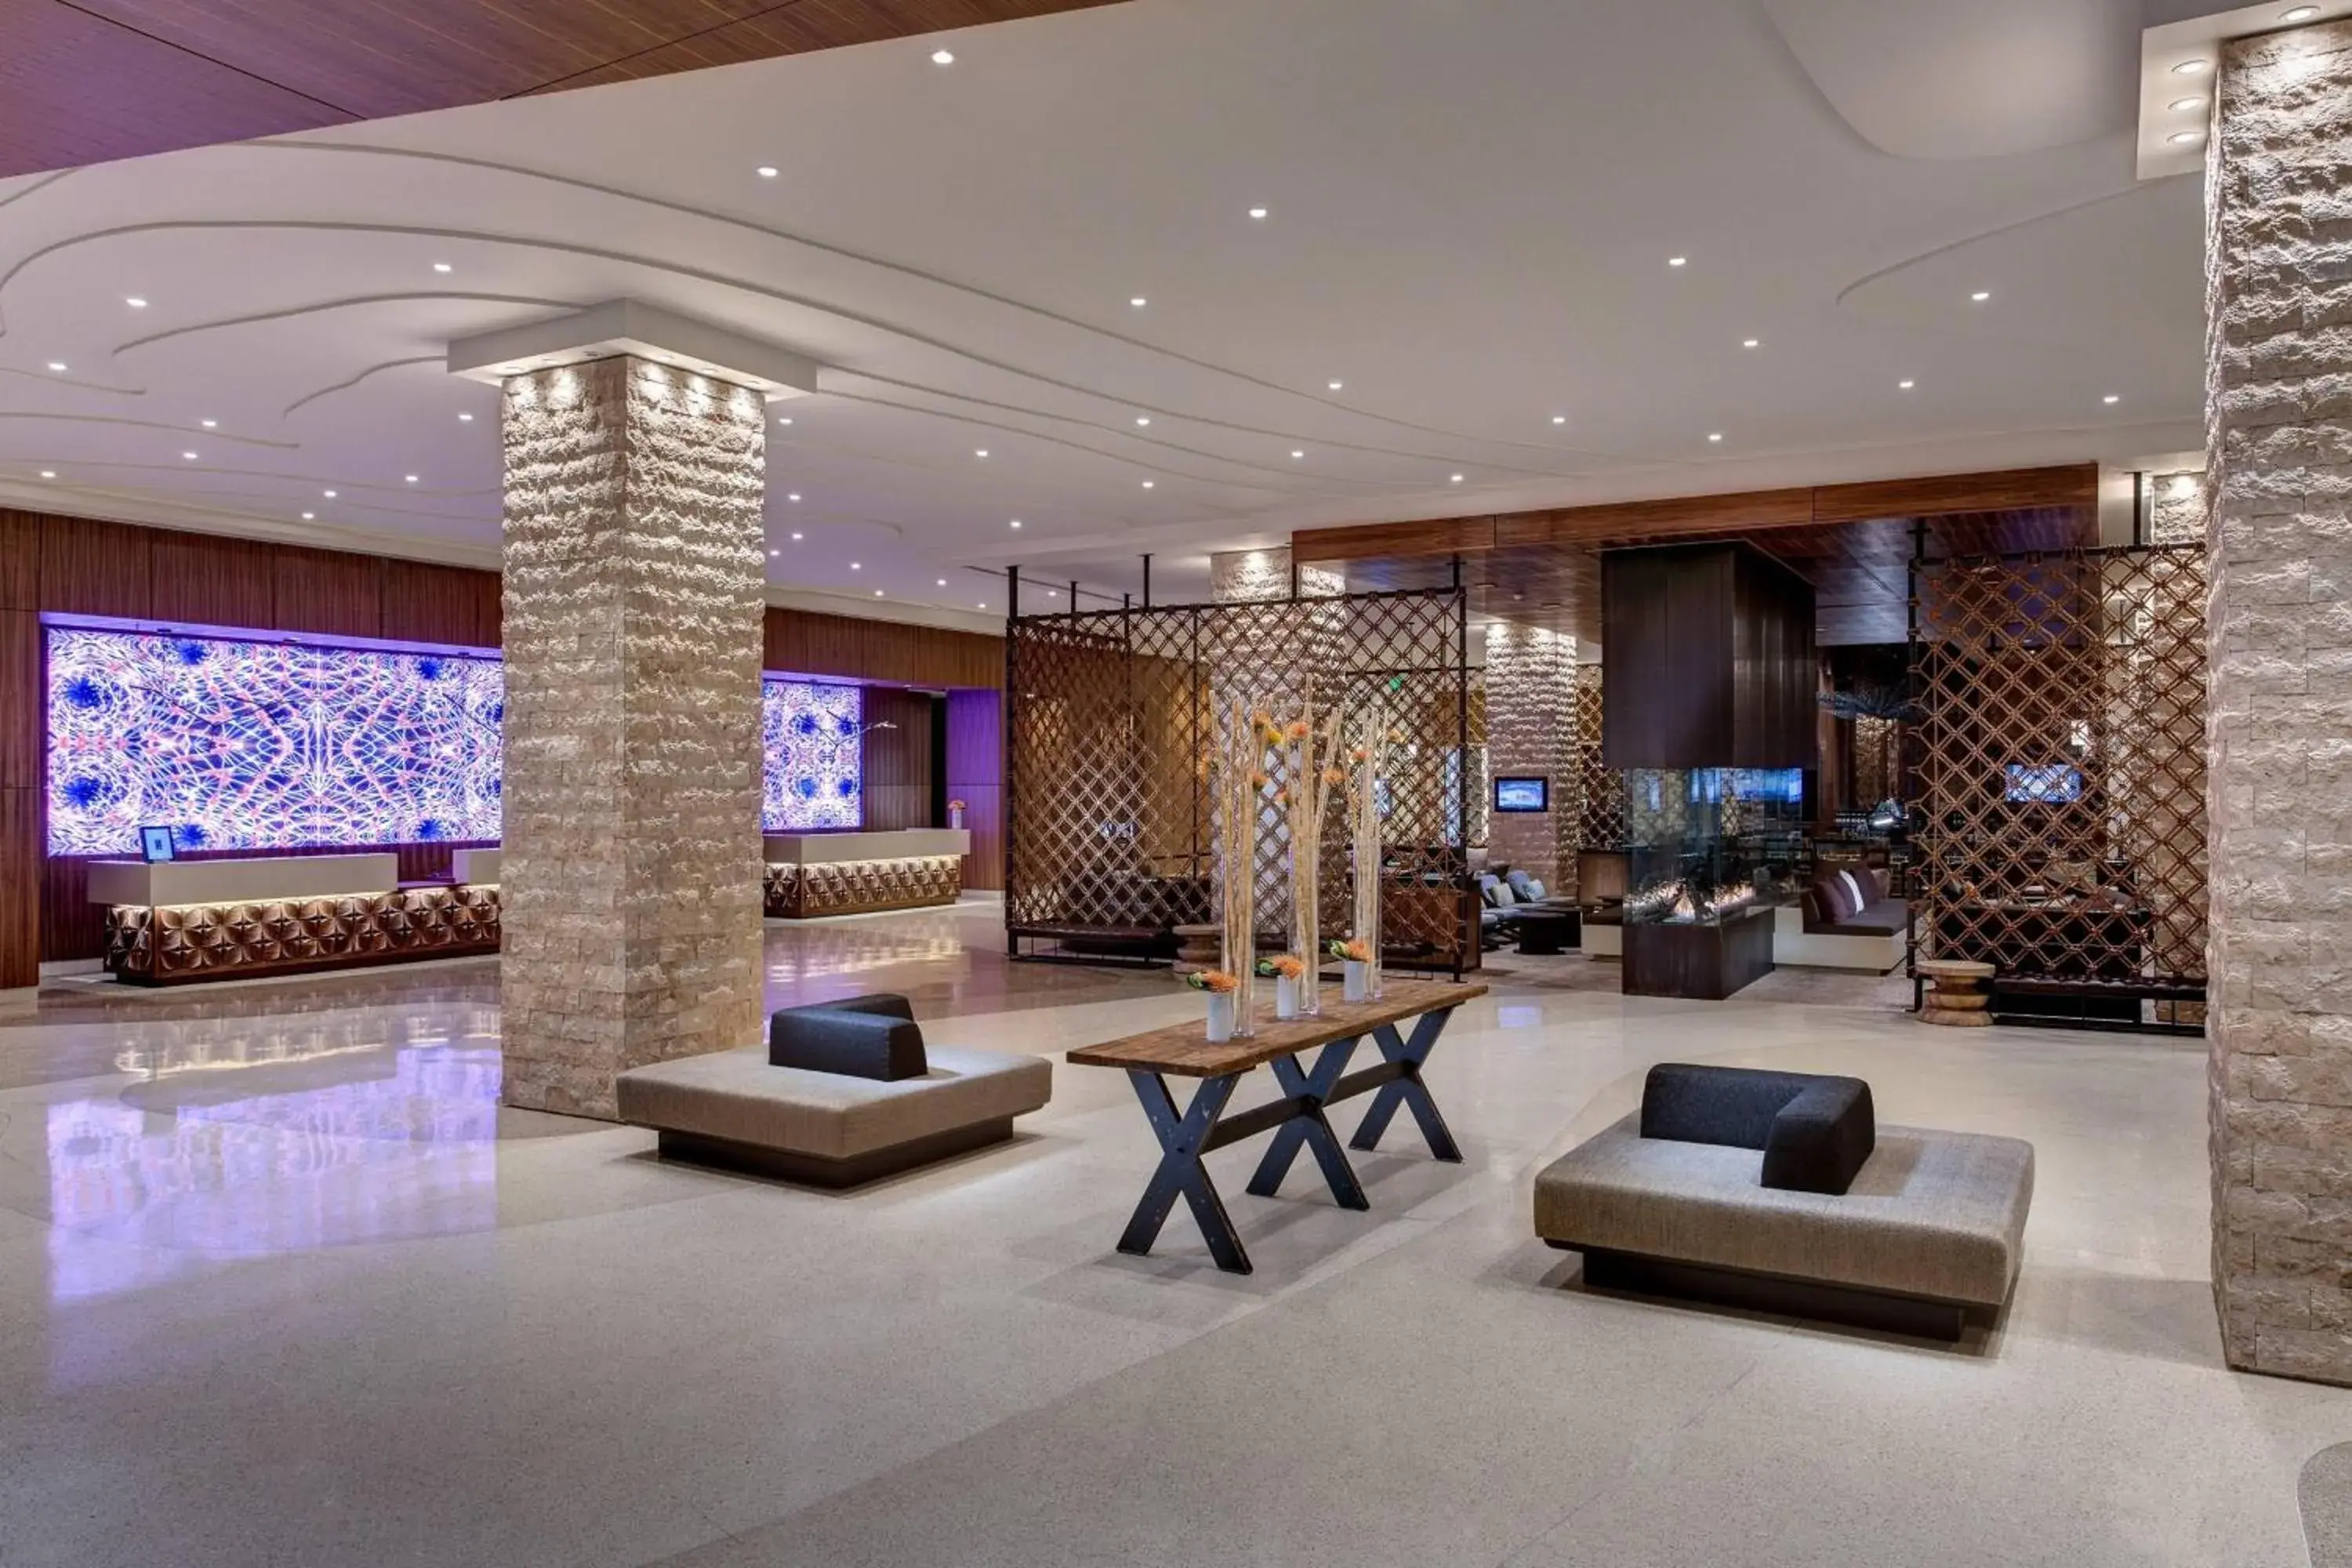 Lobby or reception, Lobby/Reception in JW Marriott Austin